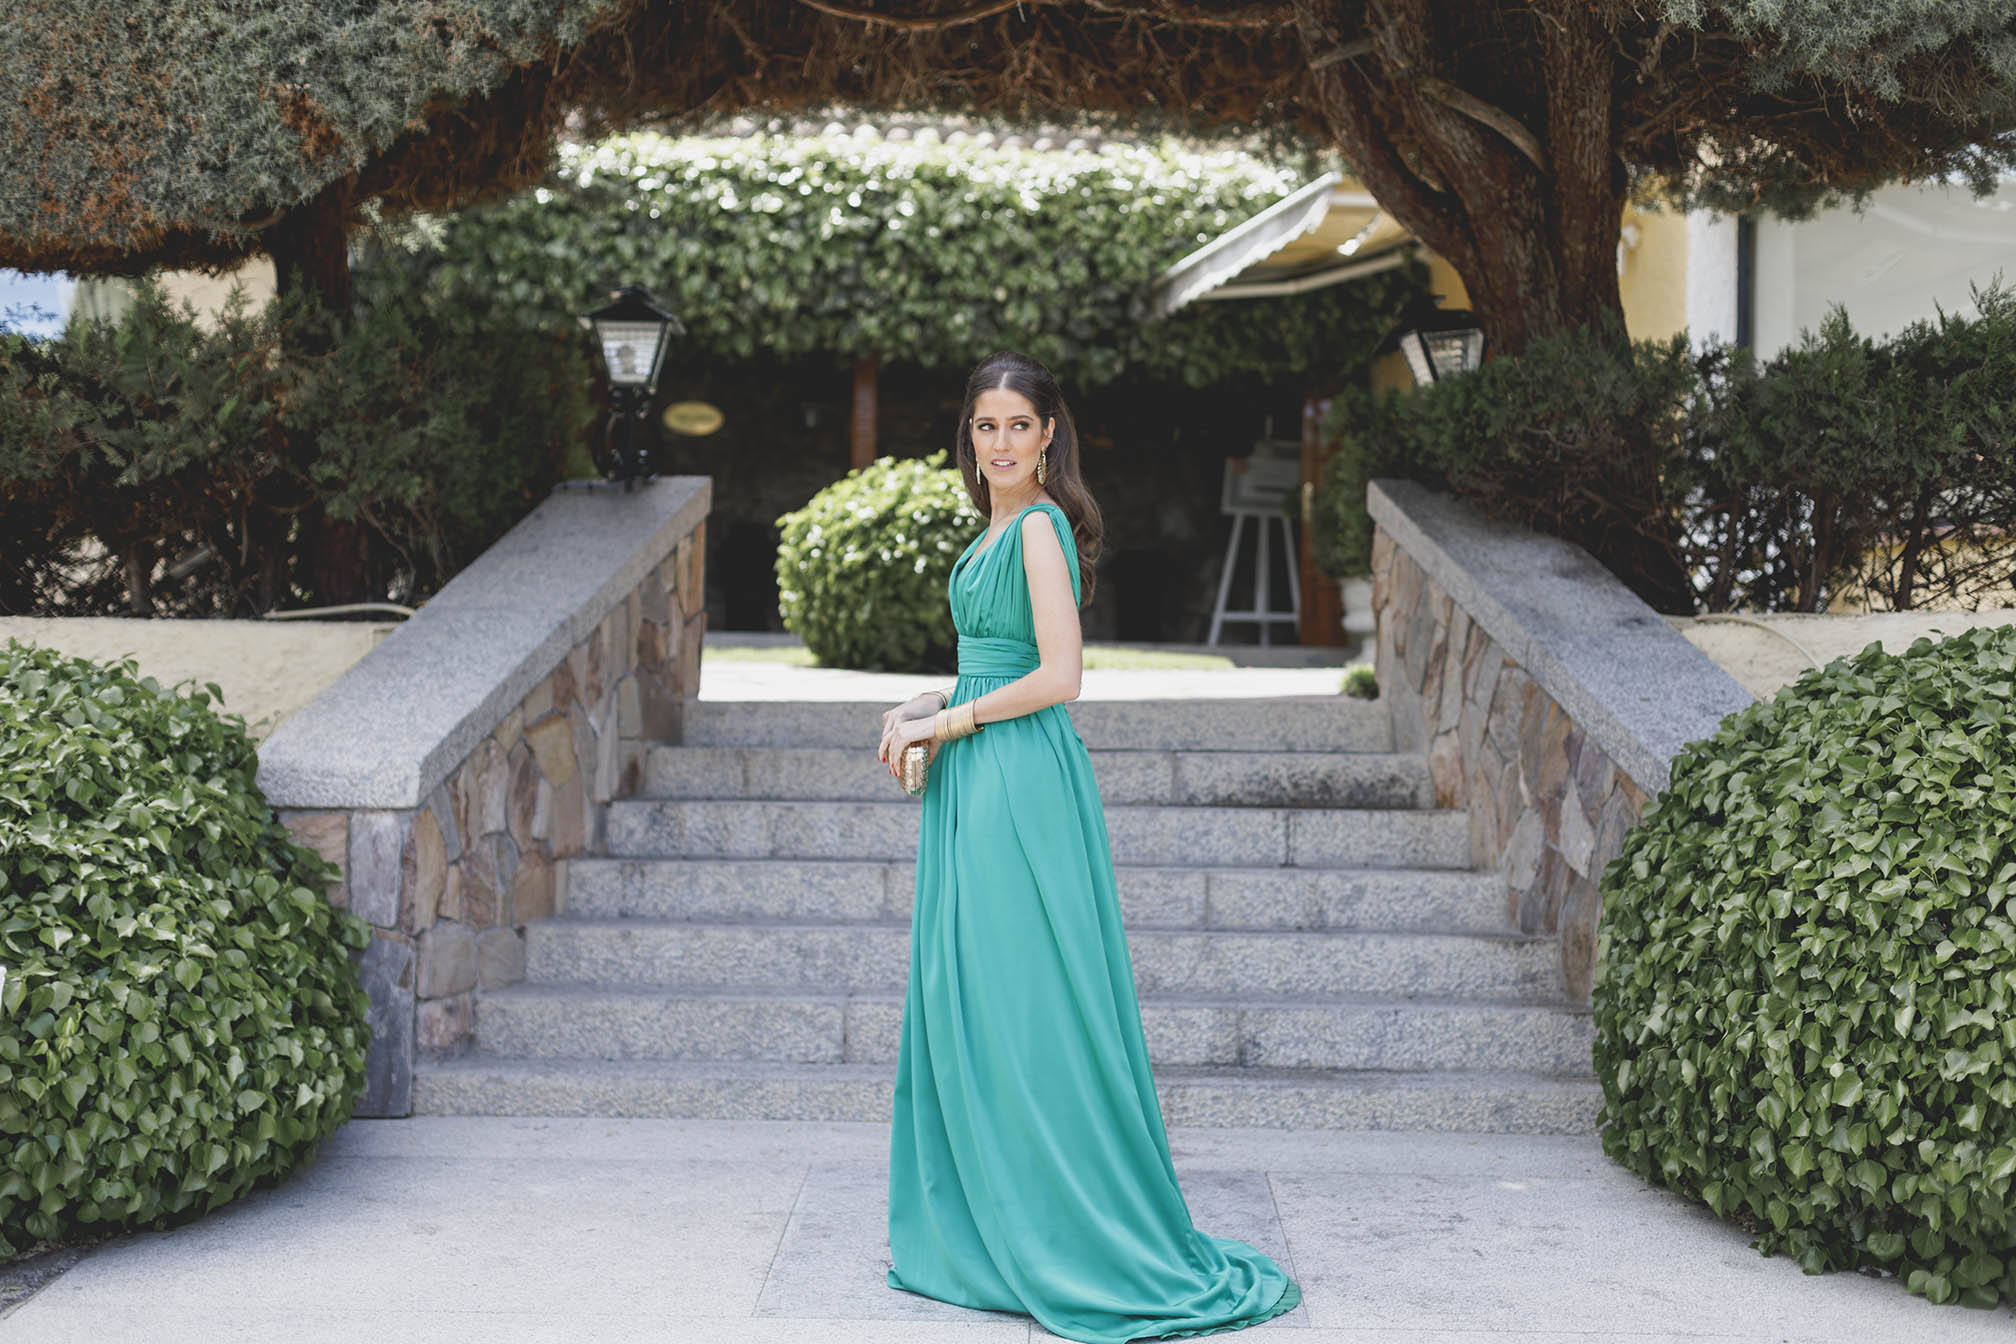 Look invitada boda noche vestido largo verde peinado pelo suelto ondas invitada perfecta 2018